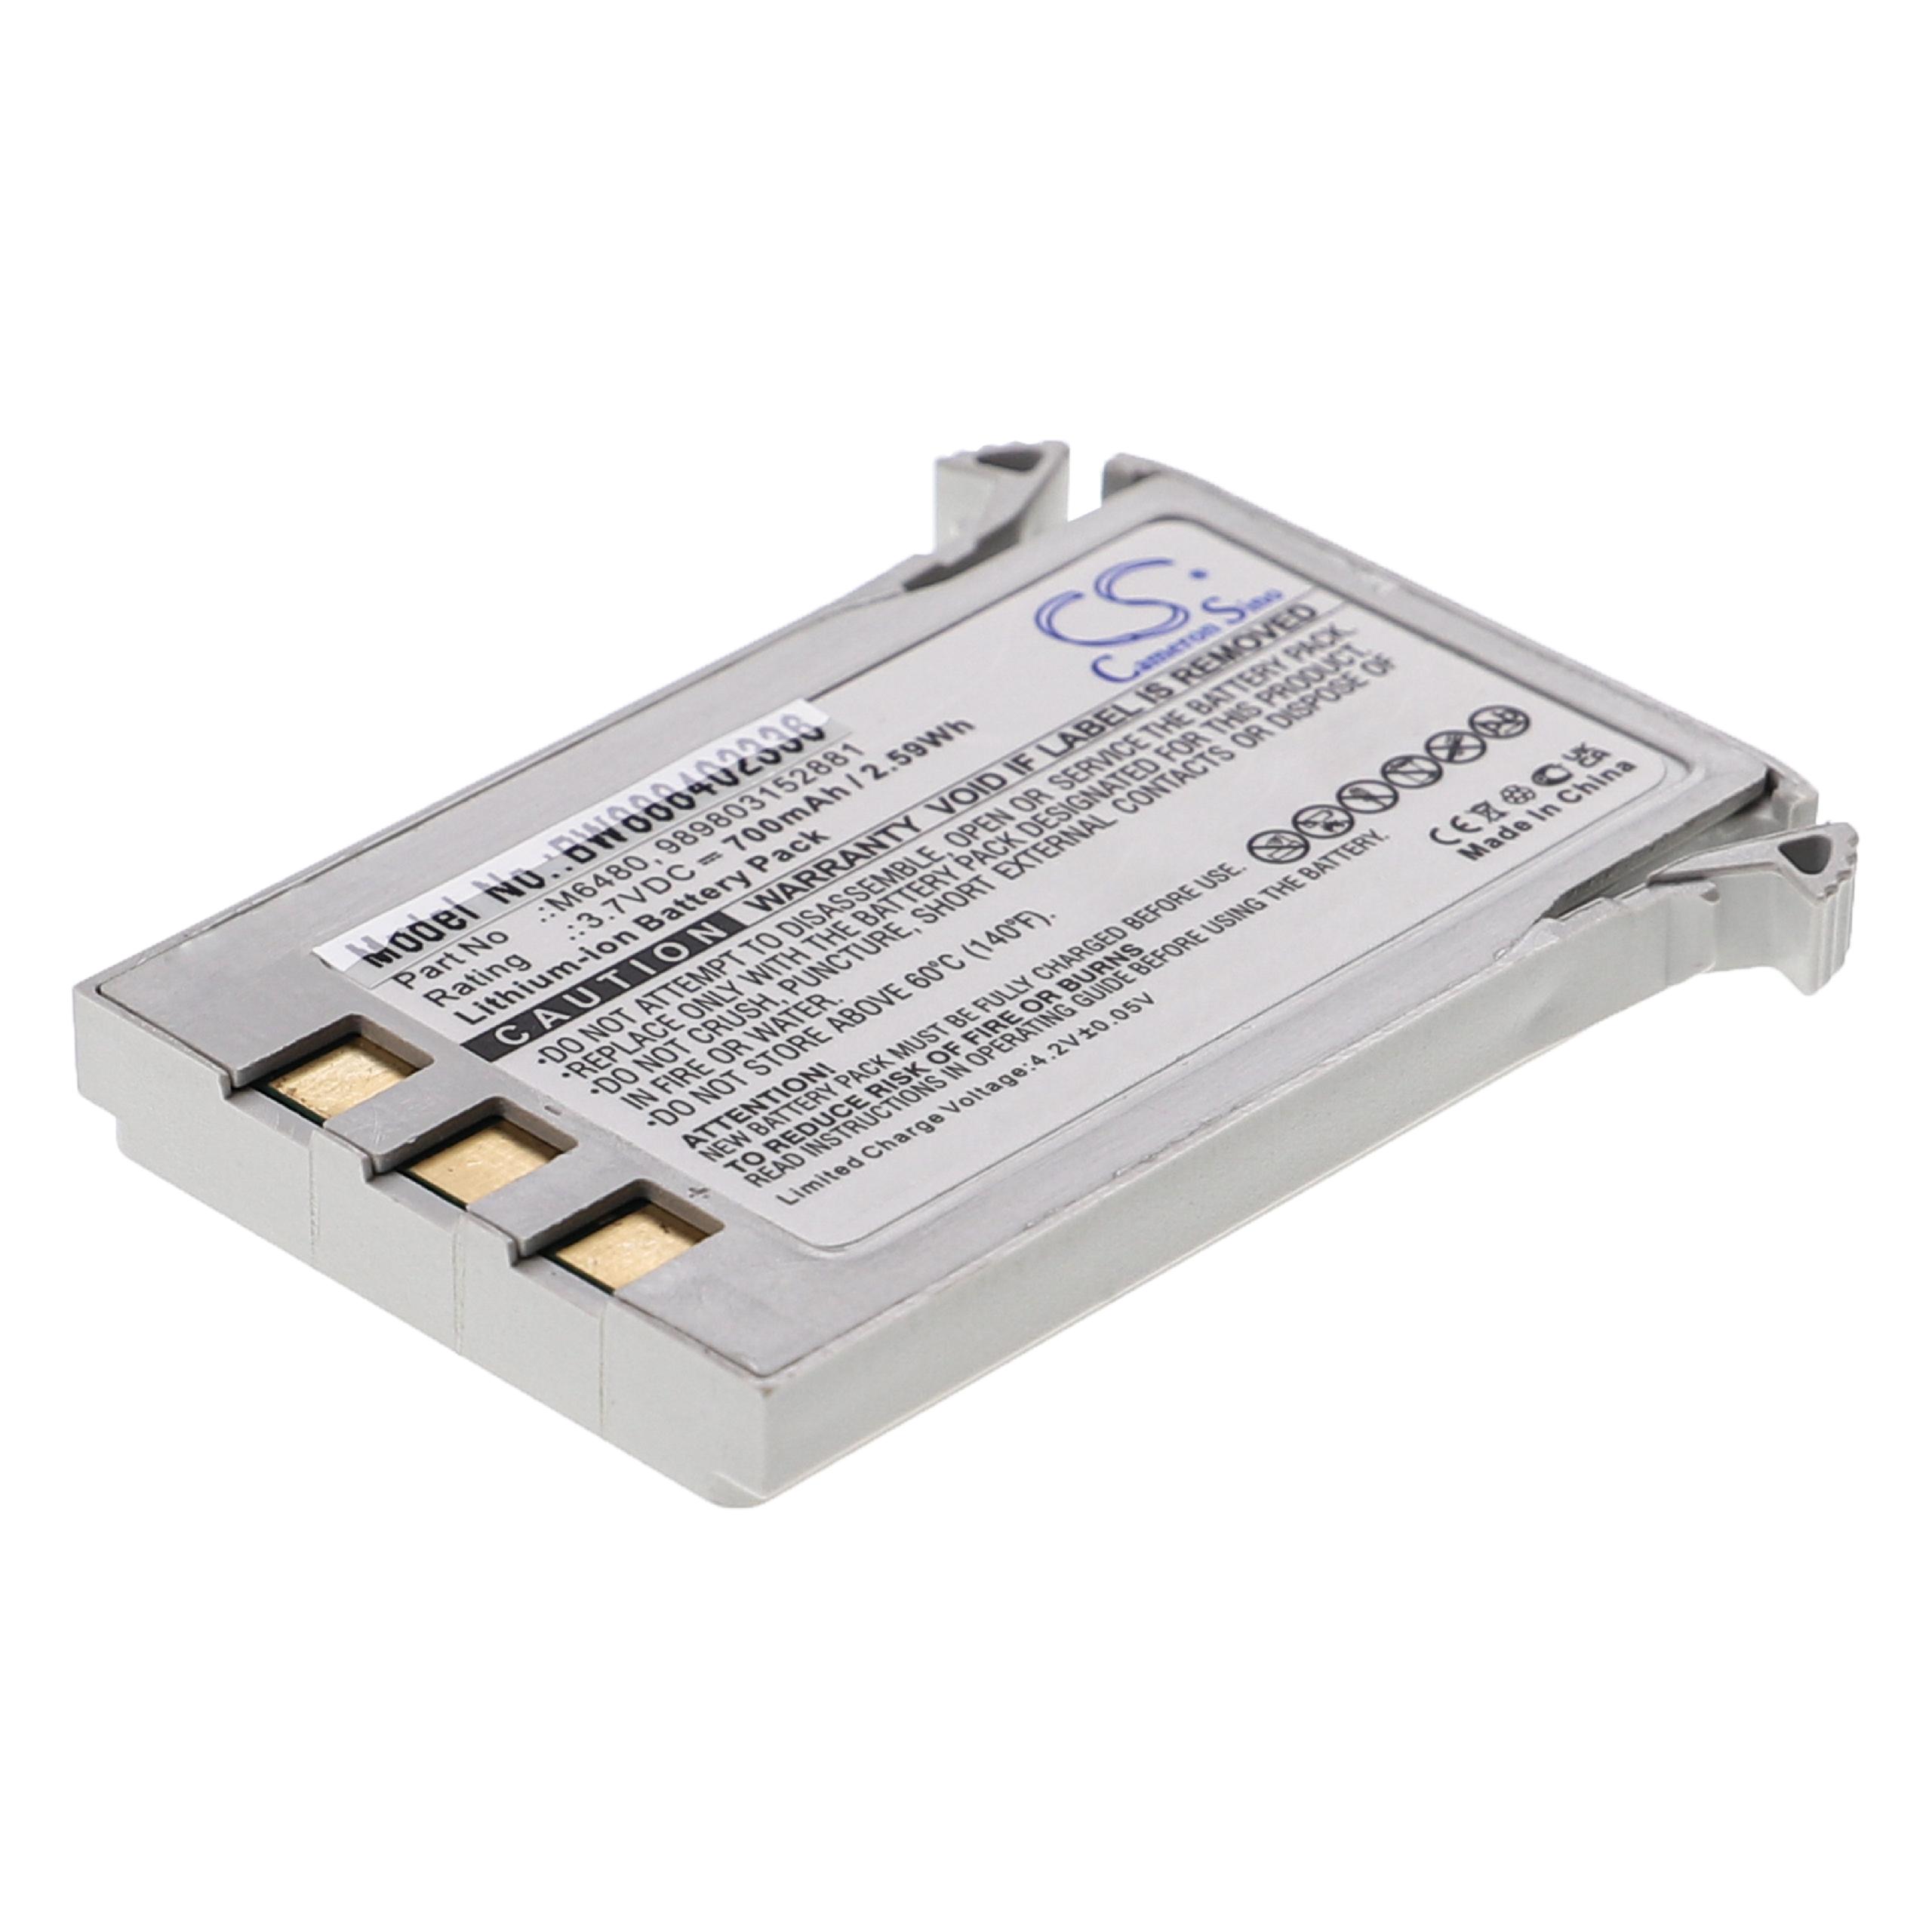 Batterie remplace Philips 989803152881, M6480 pour appareil médical - 700mAh 3,7V Li-ion